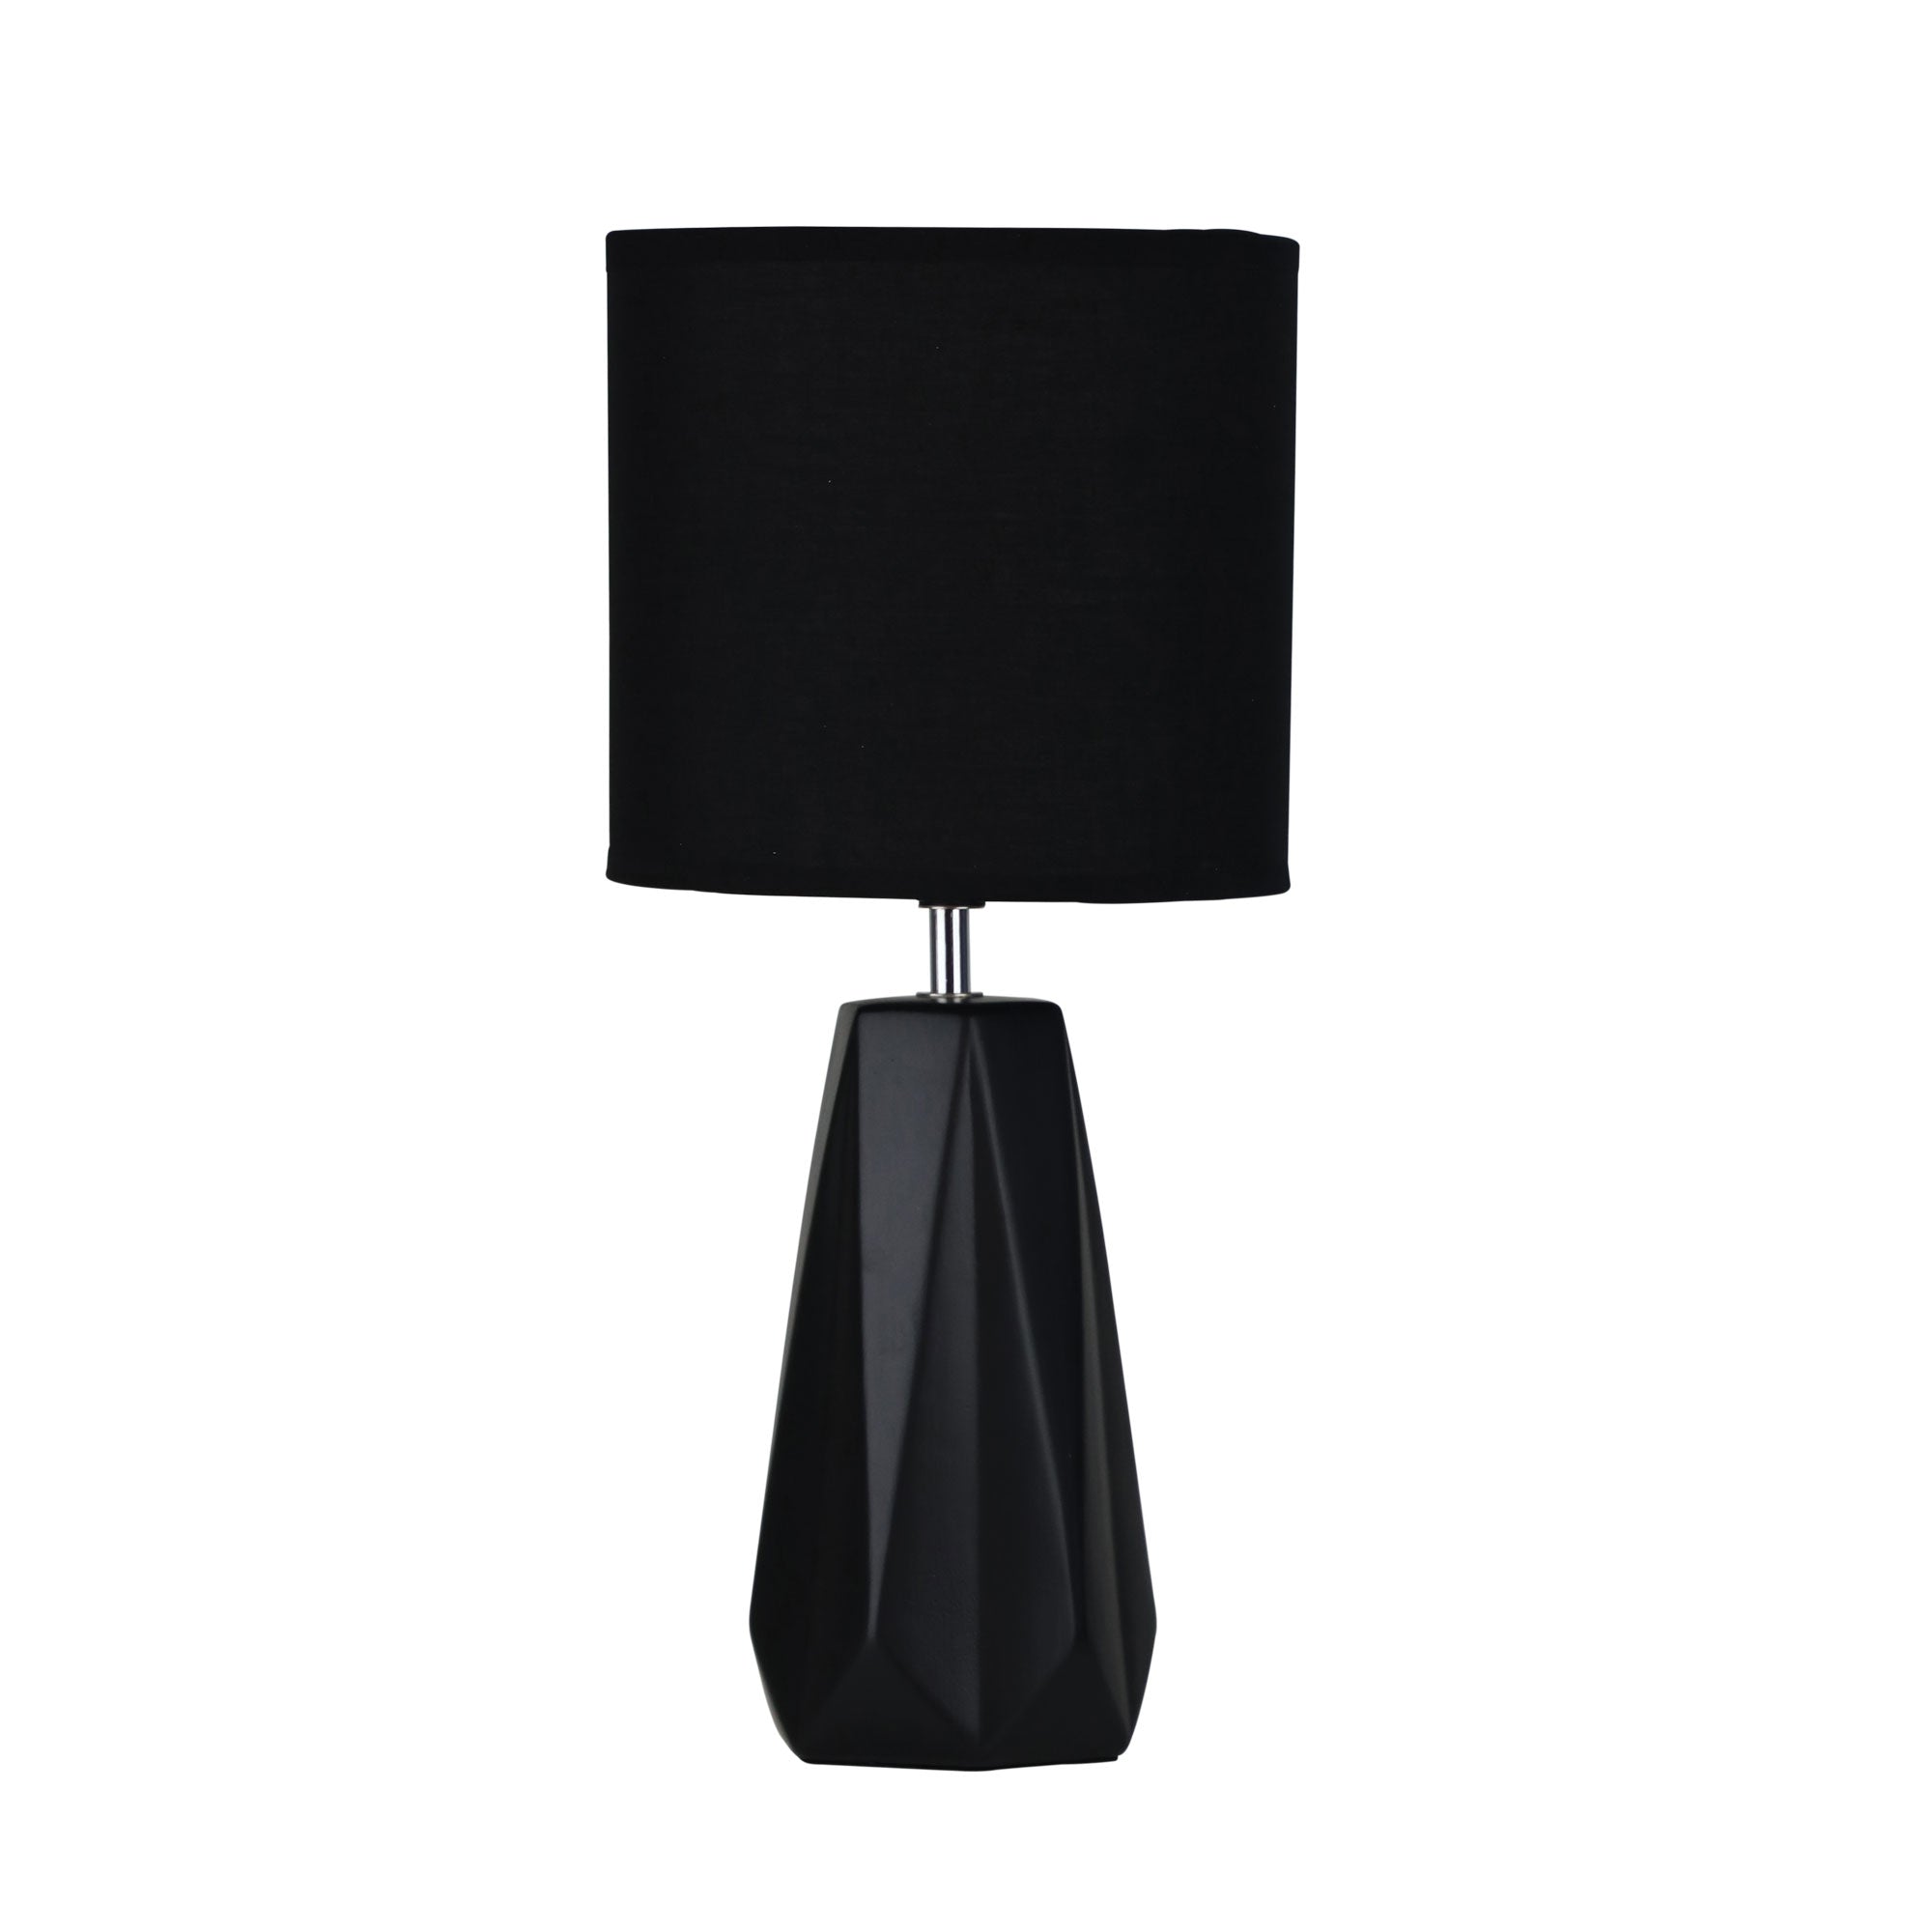 Shelly 1 Light Table Lamp Black - OL90115BK